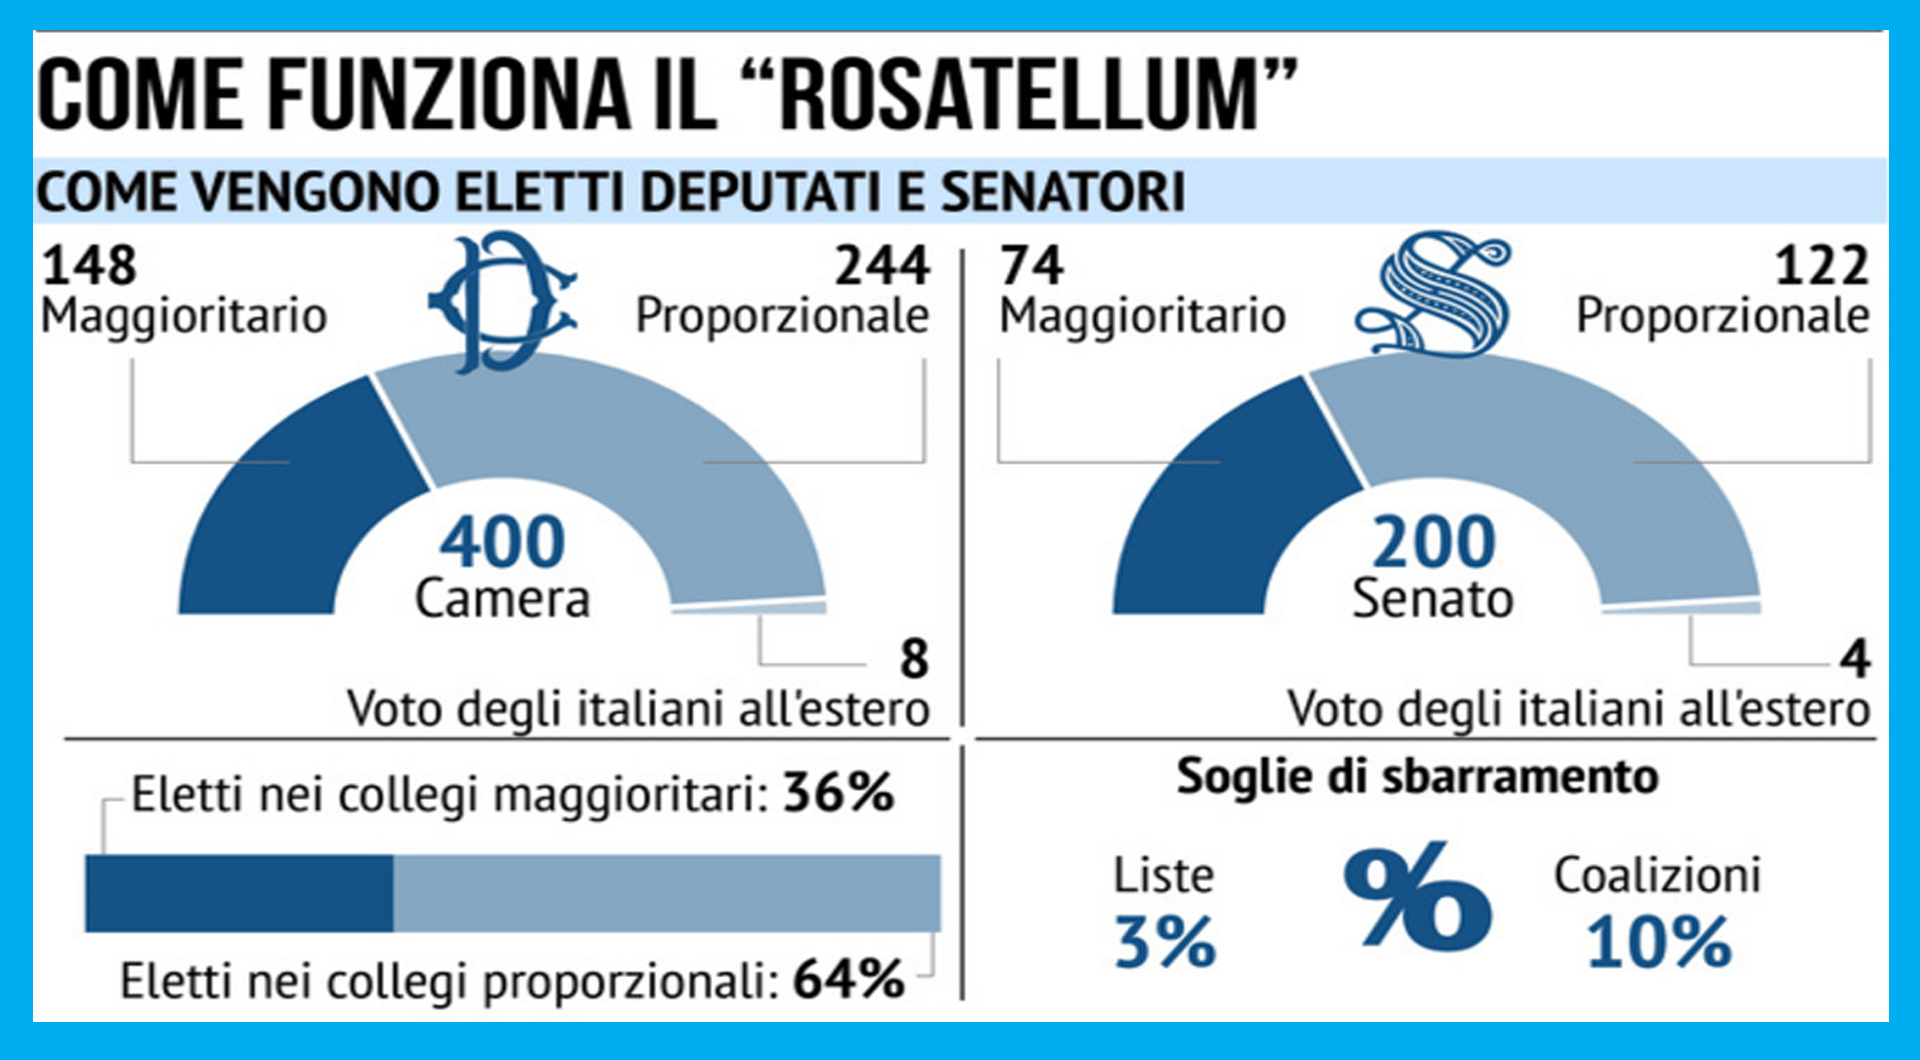 Il 25 settembre si voterà con il Rosatellum. Nei collegi uninominali e plurinominali gli elettori scelgono i candidati indicati dai partiti